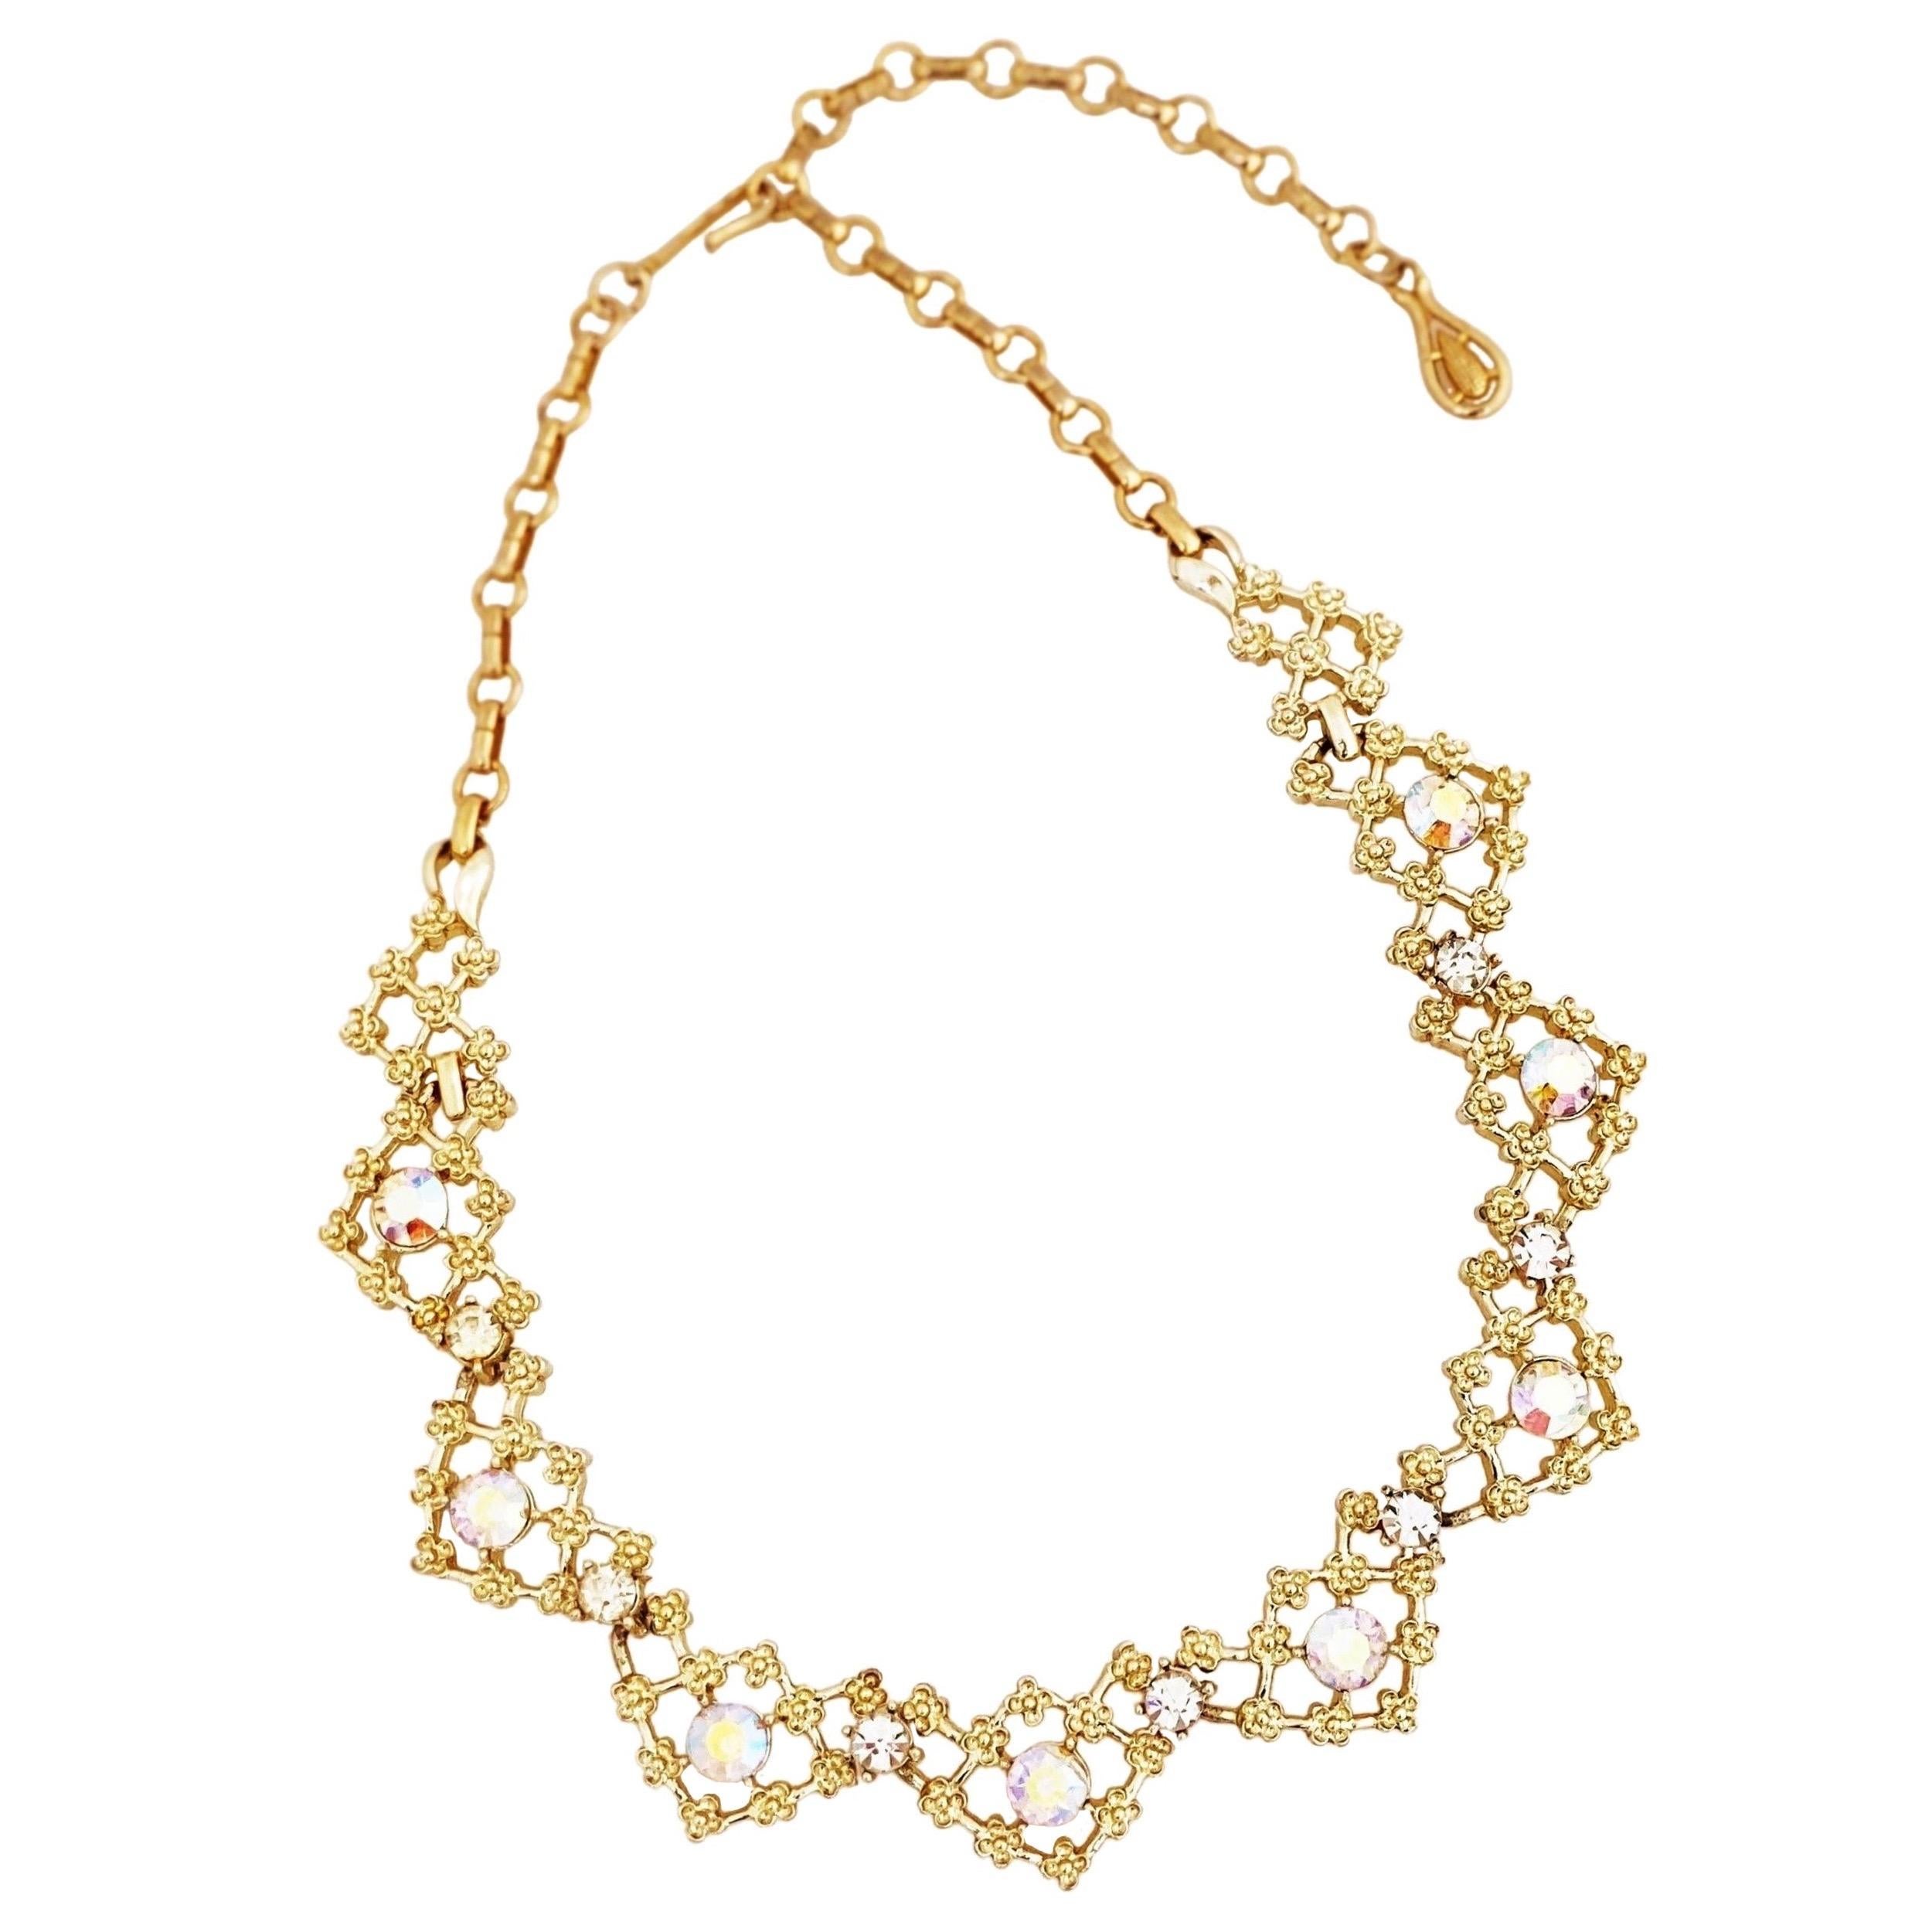 Choker-Halskette aus Gold mit floralem Gitter und Aurora Borealis-Kristallen von Coro, 1960er Jahre